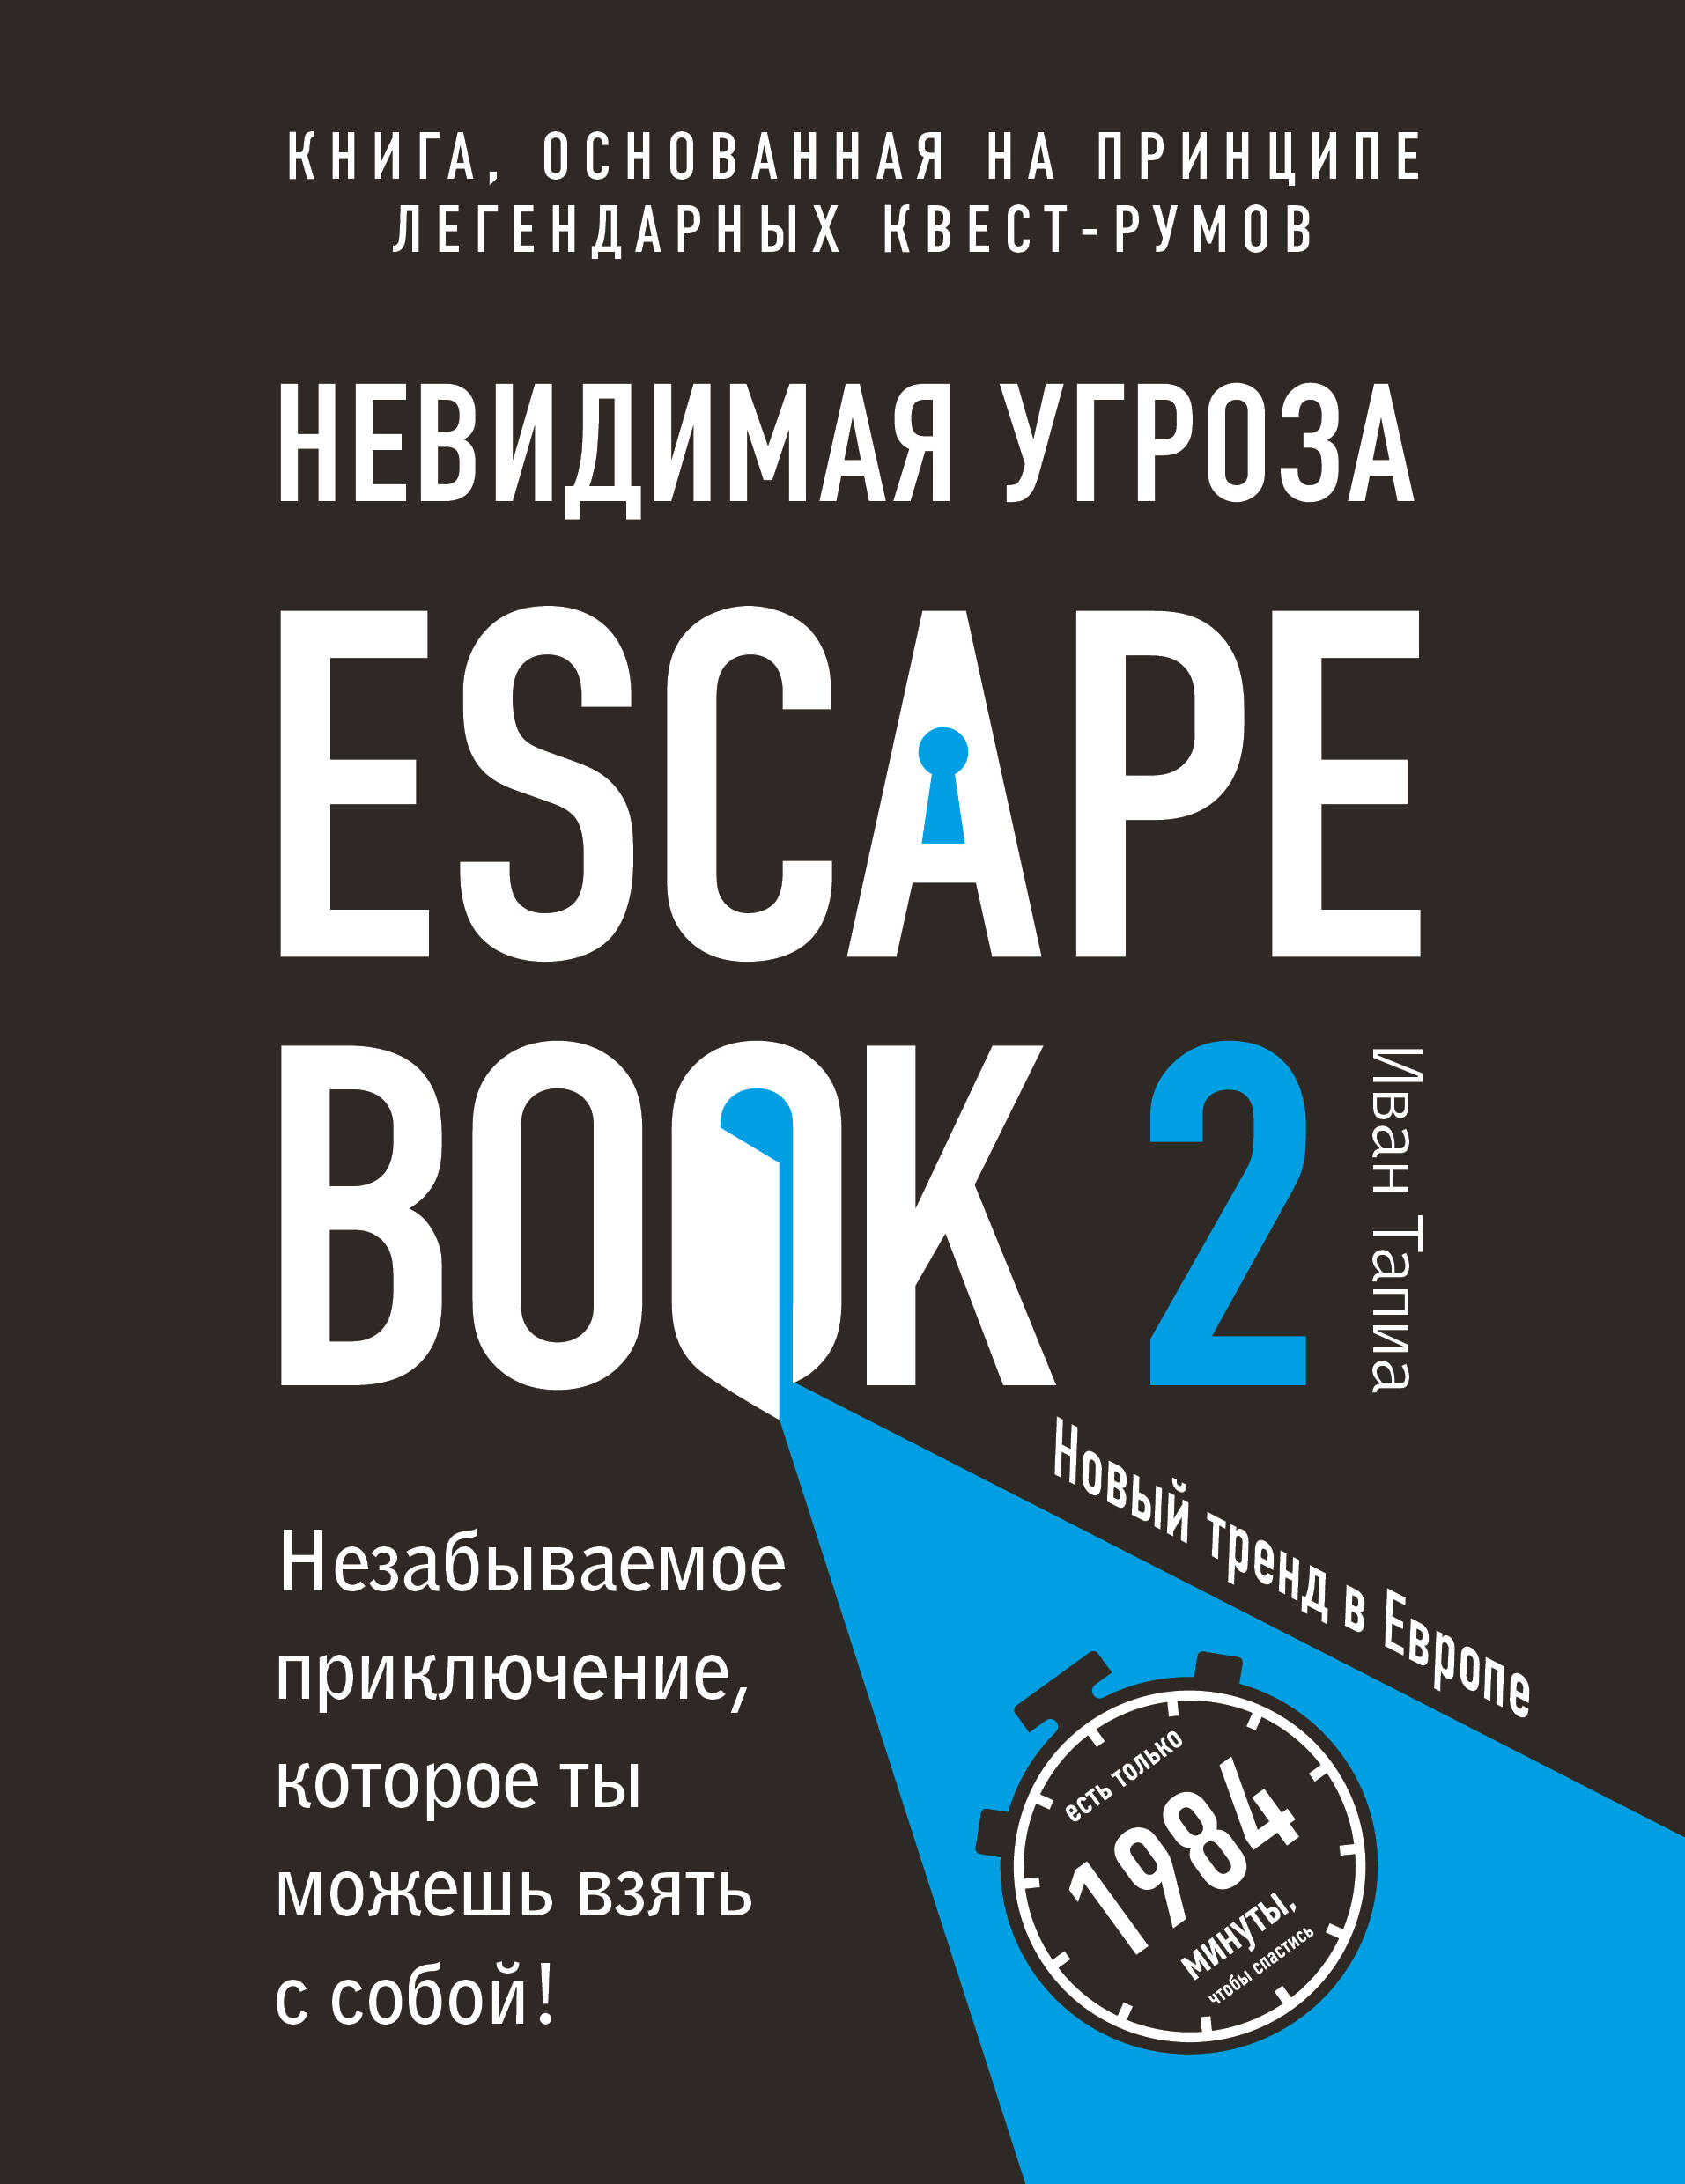 Тапиа Иван, Линдэ Монсэ - Escape Book 2: невидимая угроза. Книга, основанная на принципе легендарных квест-румов